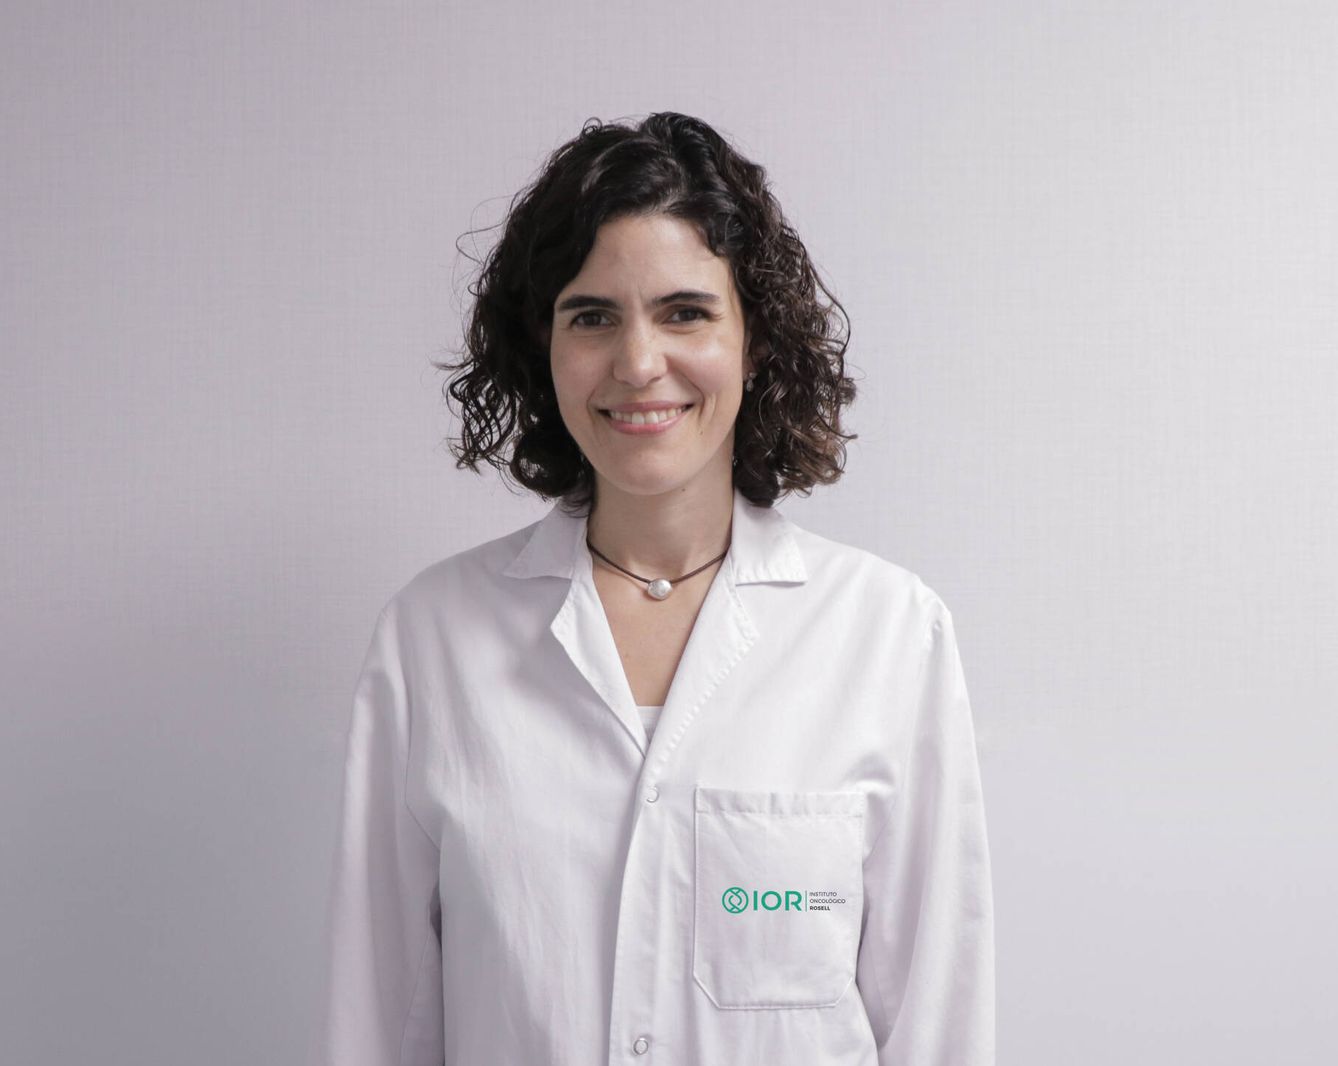 Irene Moya, oncóloga médica de IOR y coordinadora del proyecto en el HUGC. (Foto cedida)